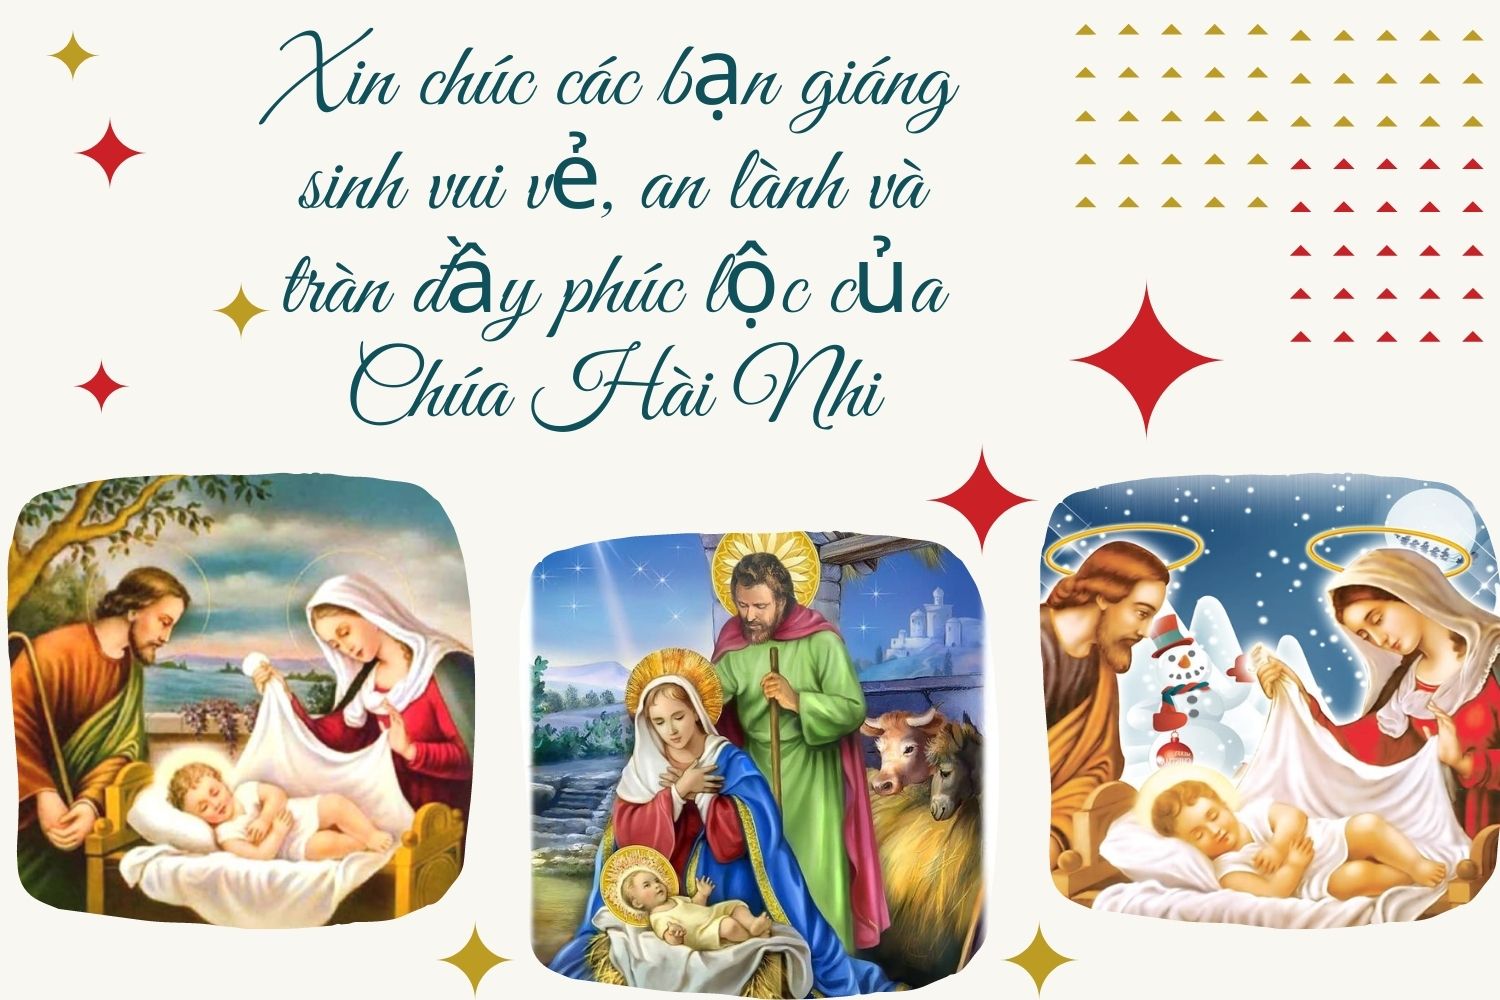 Lời chúc Giáng sinh cho người công giáo hay, ý nghĩa nhất năm 2021 - Ảnh 4.